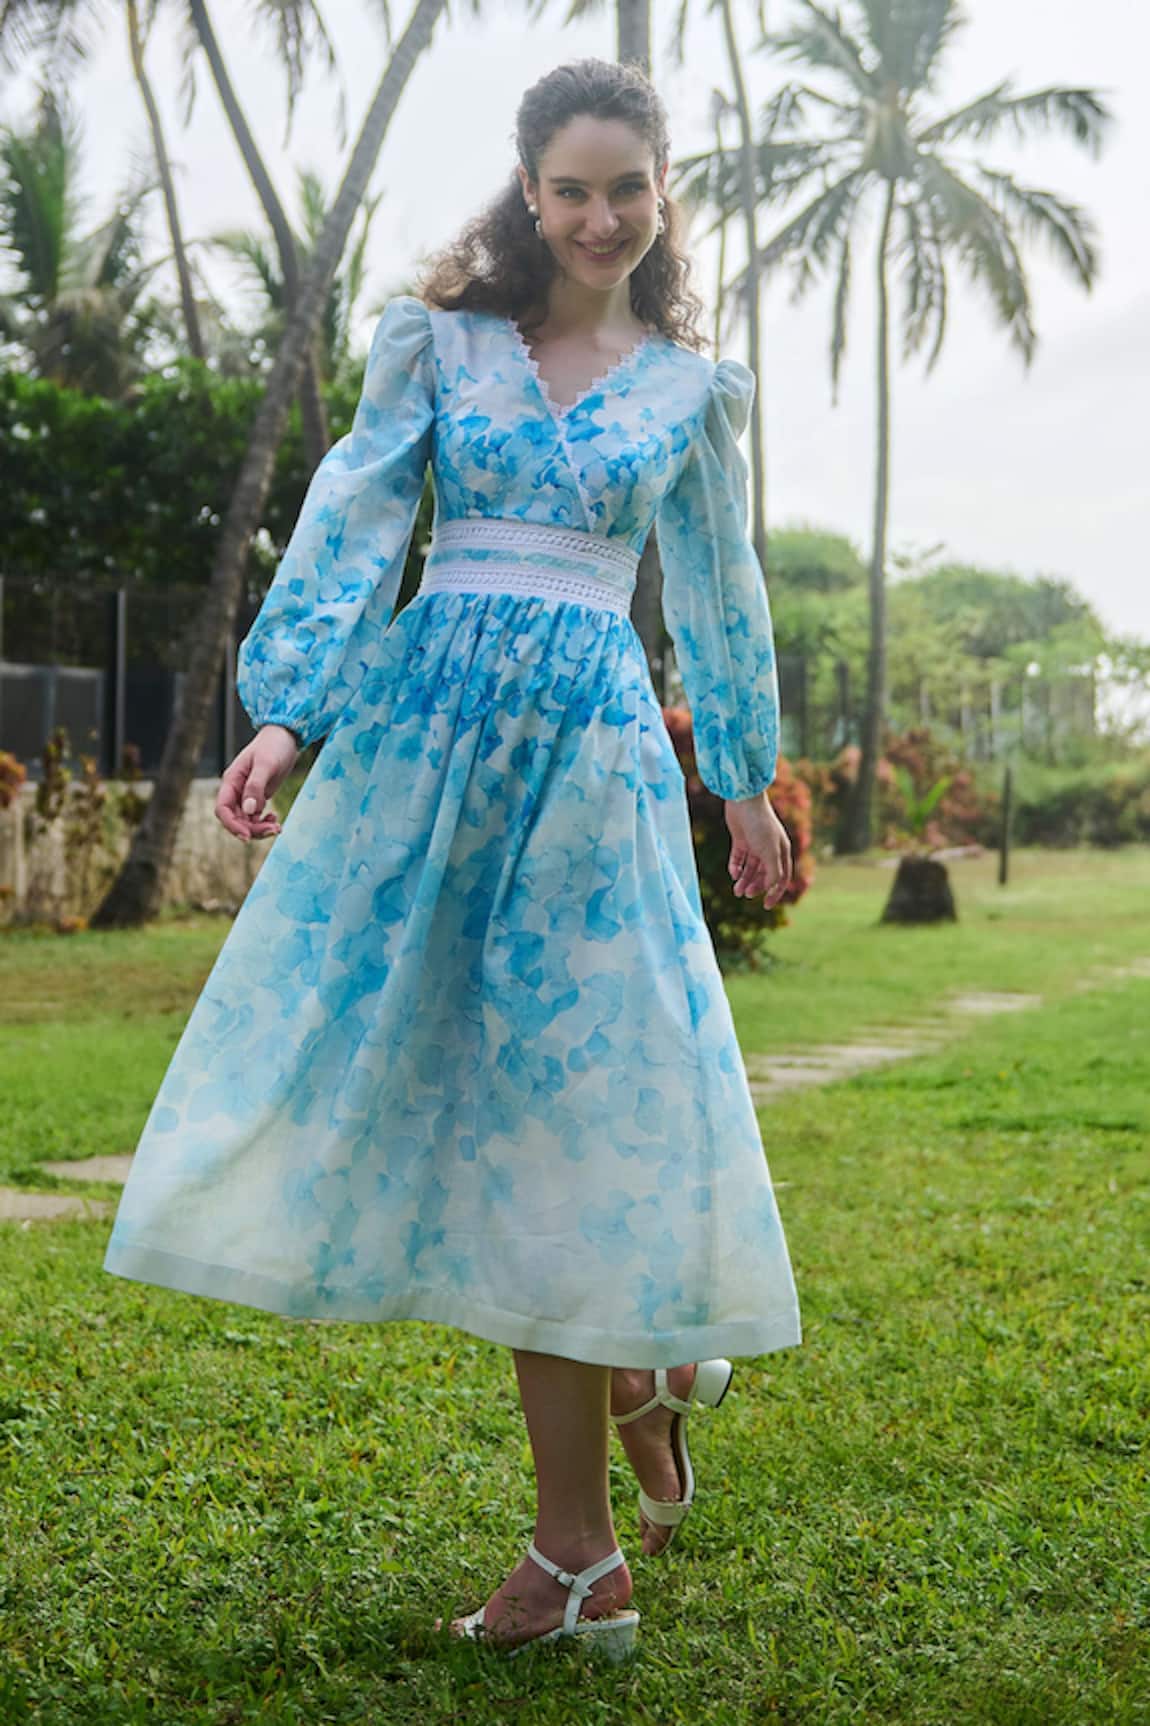 Verano by Tanya Viviana Floral Print Dress